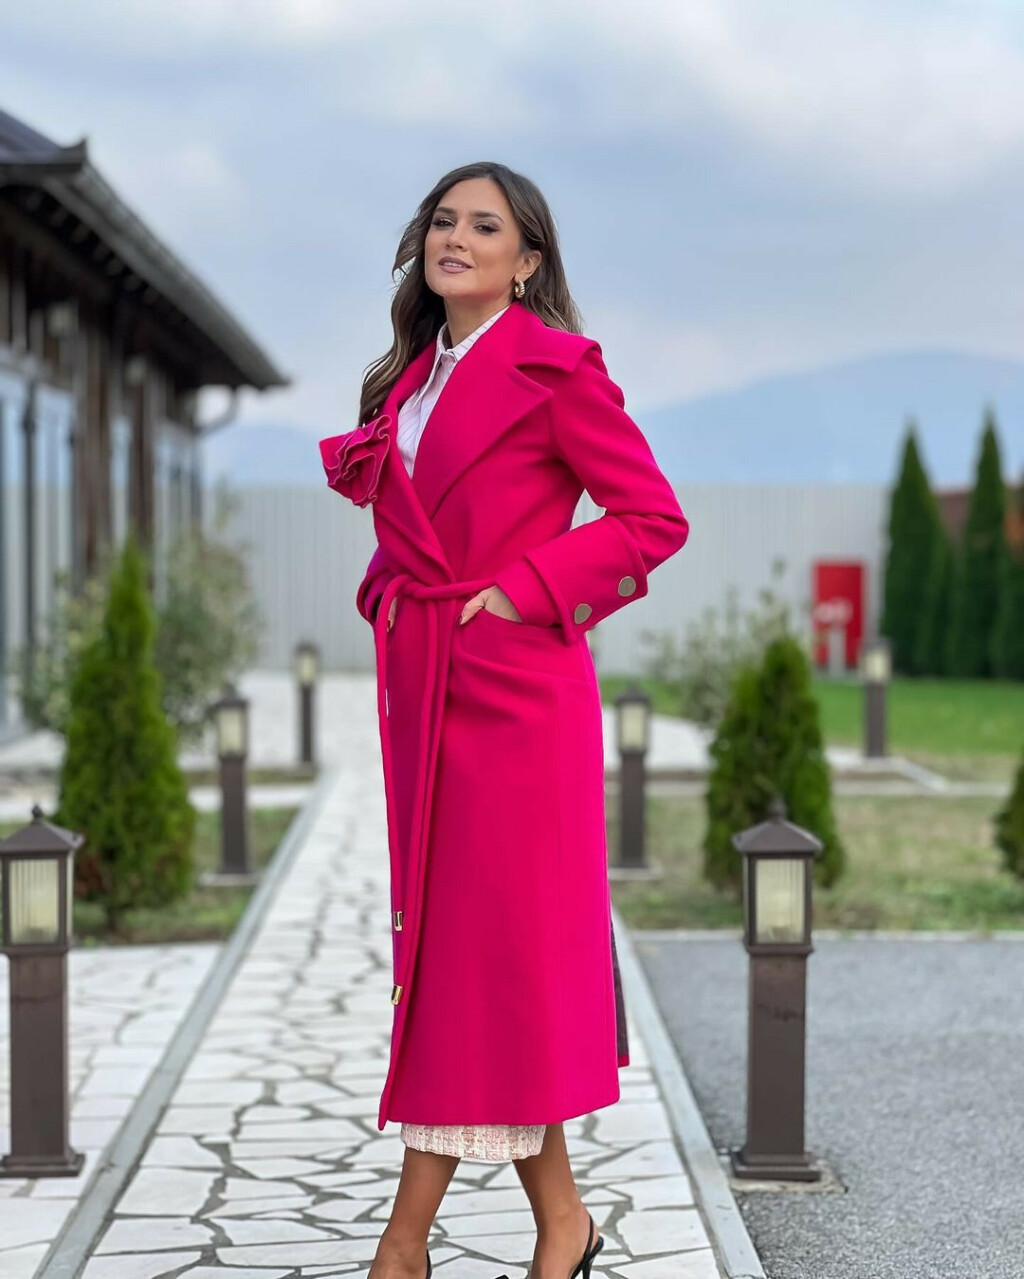 Zagrebačka street stylerica nosi ružičasti kaput brenda Mona